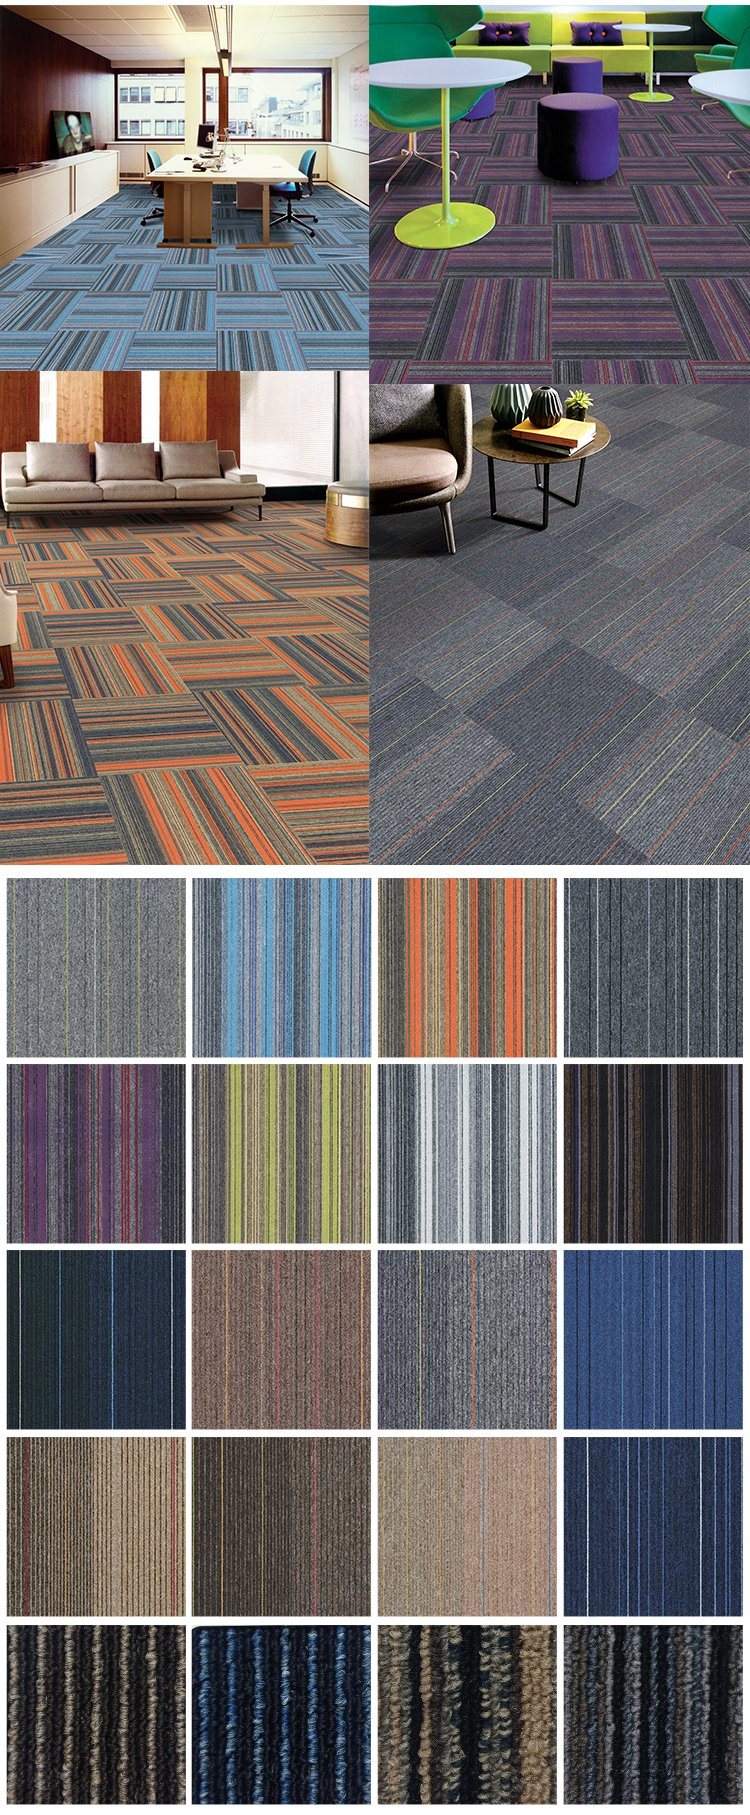 New Modern Design Carpet Design Commercial Office Tufted Carpet Tile